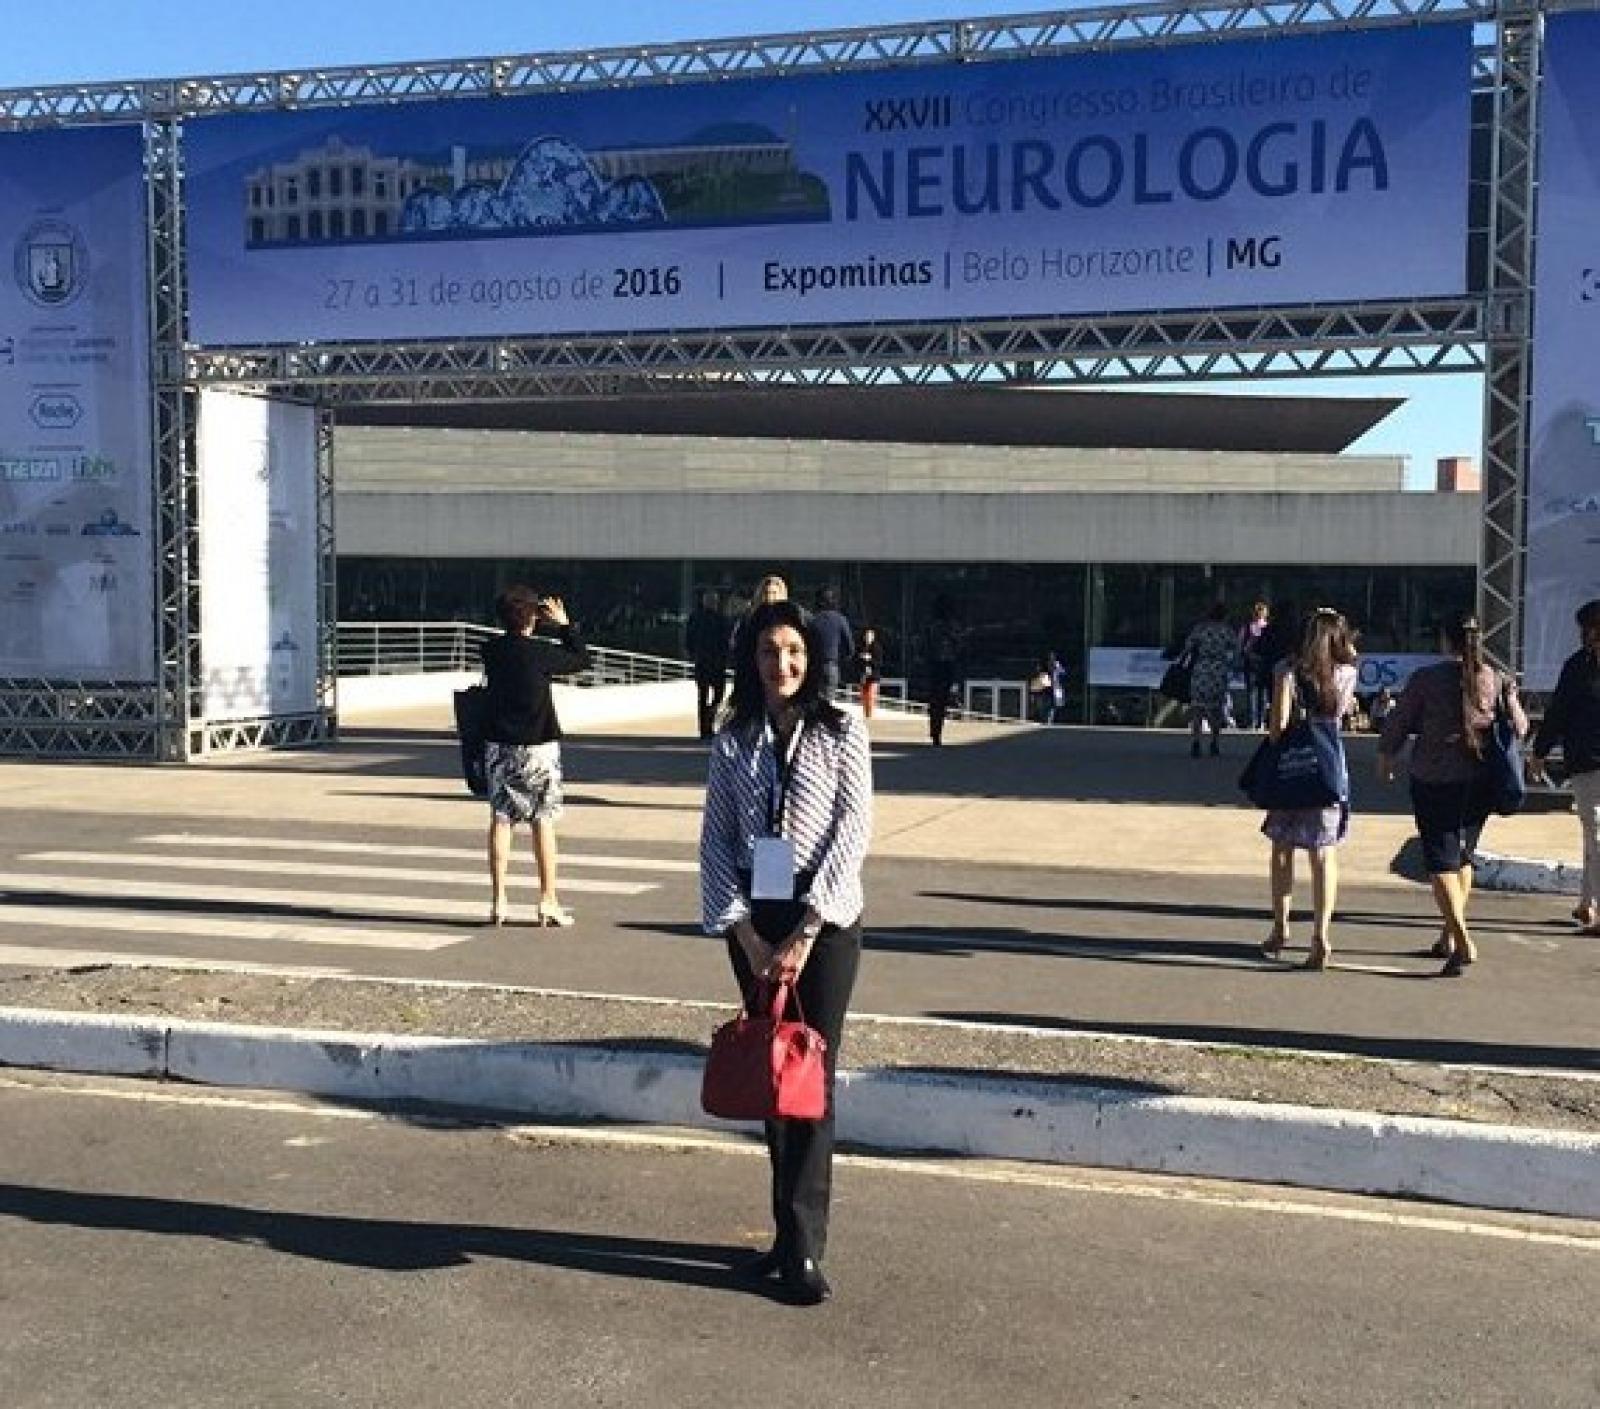 XXVII Congresso Brasileiro de Neurologia